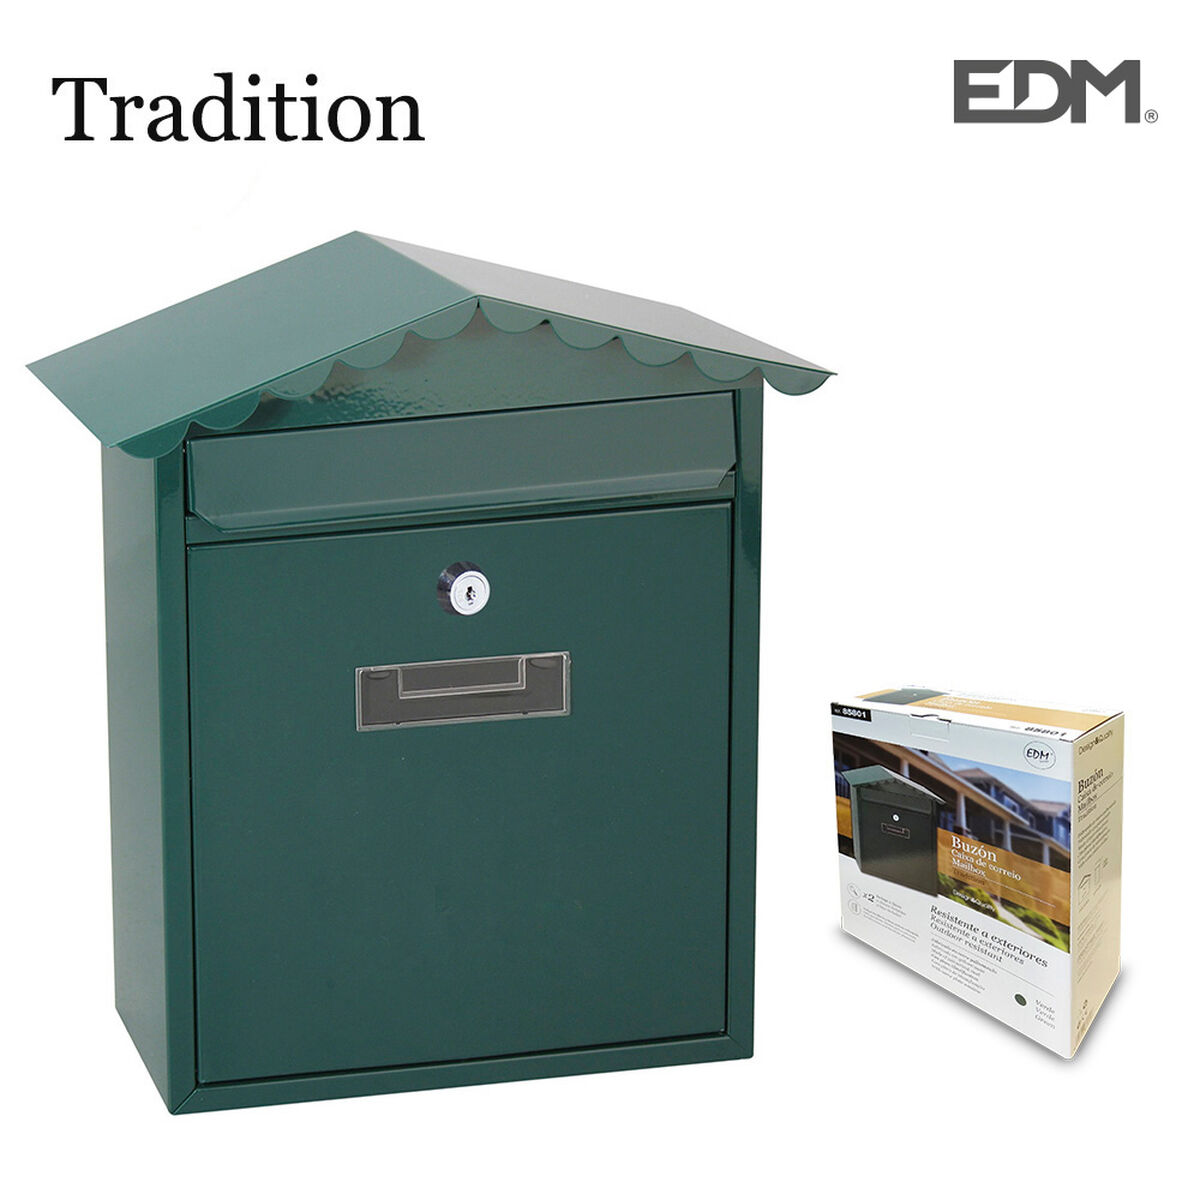 Cassetta della posta EDM Tradition Acciaio Verde (26 x 9 x 35,5 cm)